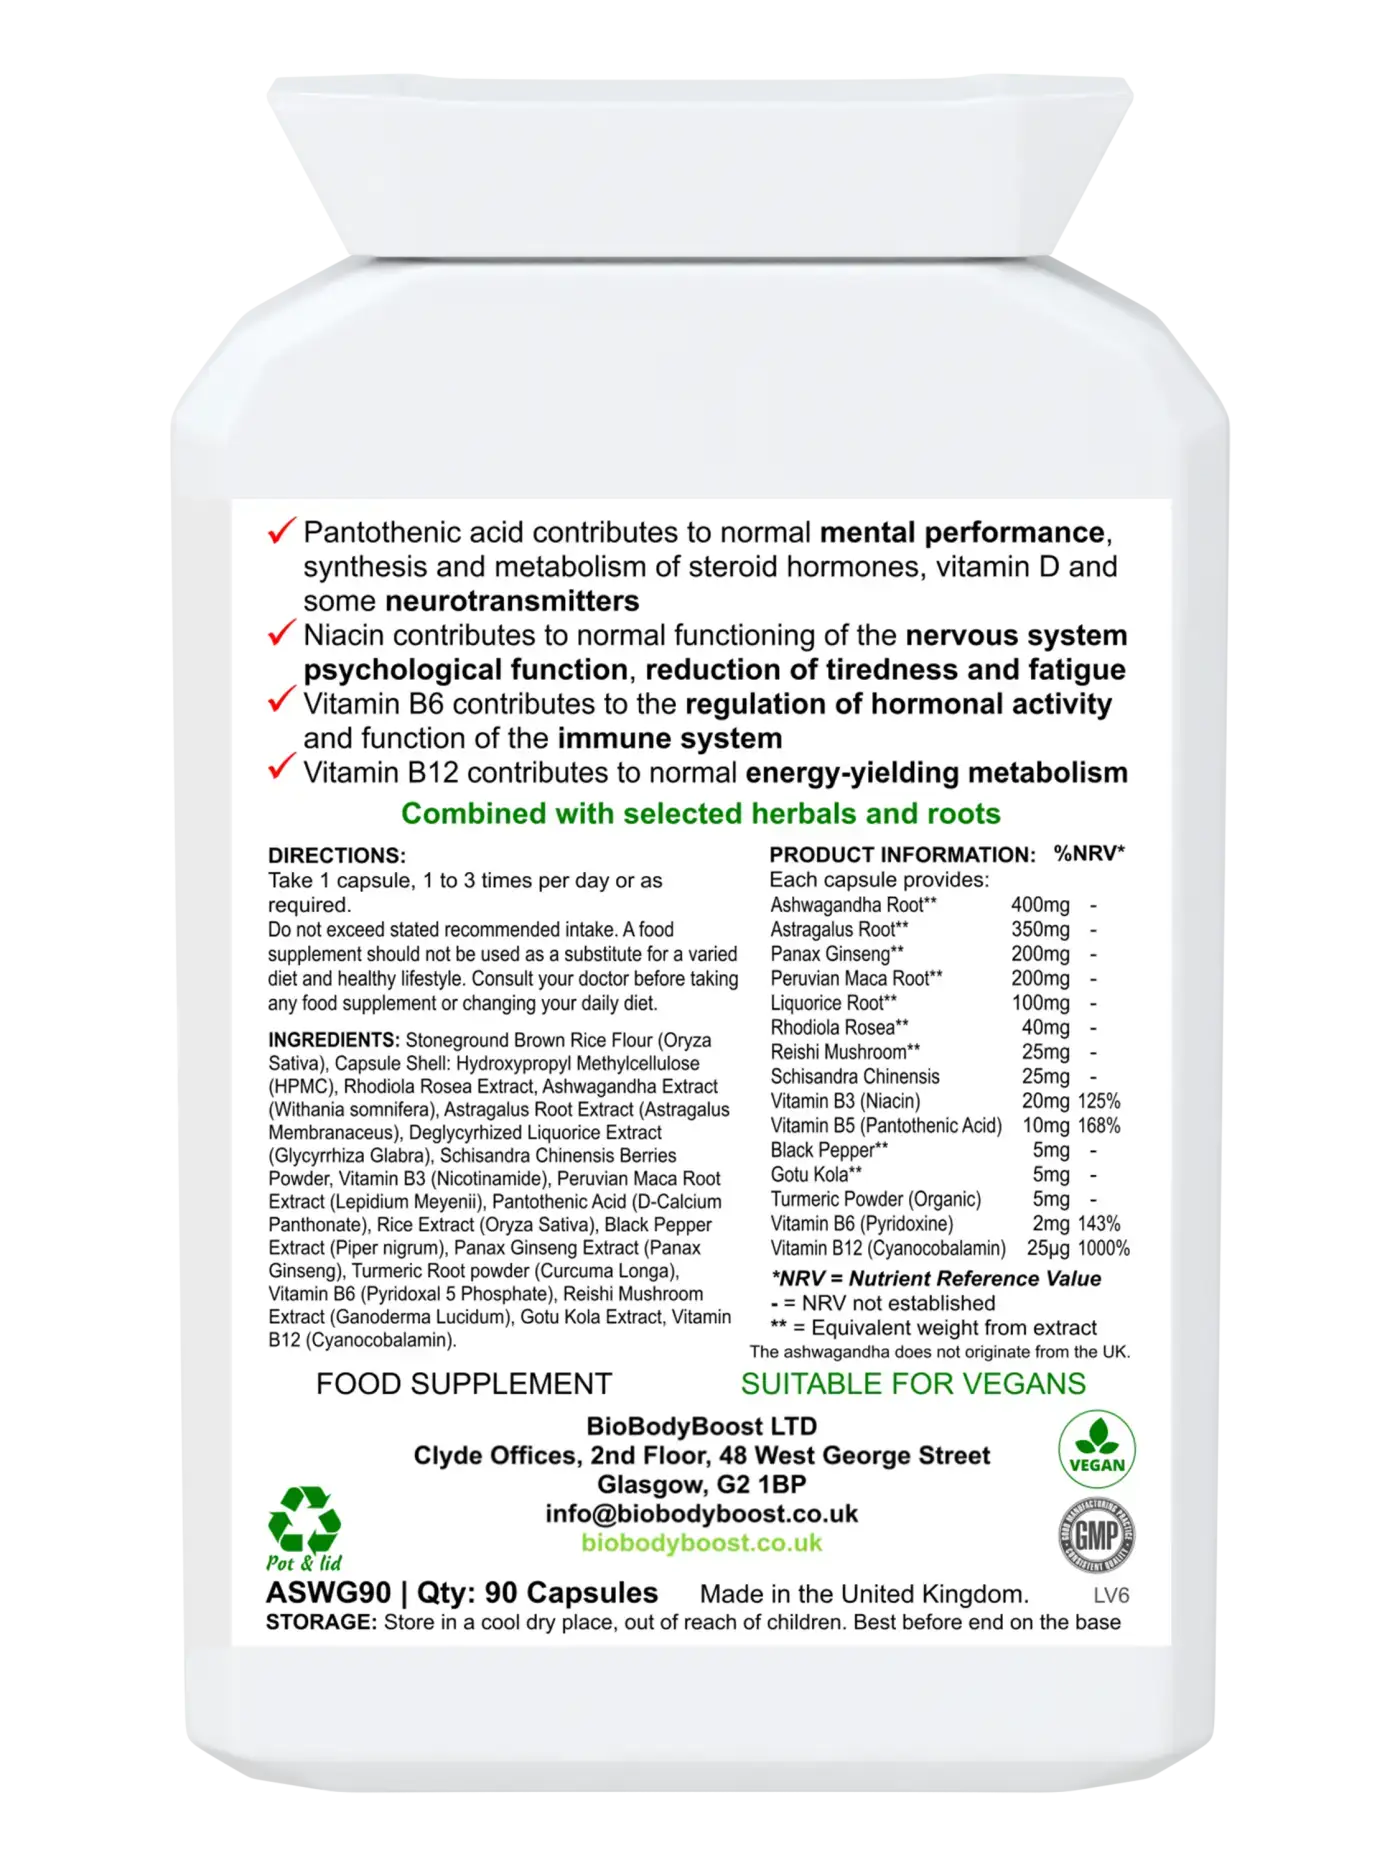 ZenBlend Ashwagandha Complex - Premium Vitamins & Supplements from BioBodyBoost - Just £15.99! Shop now at BioBodyBoost